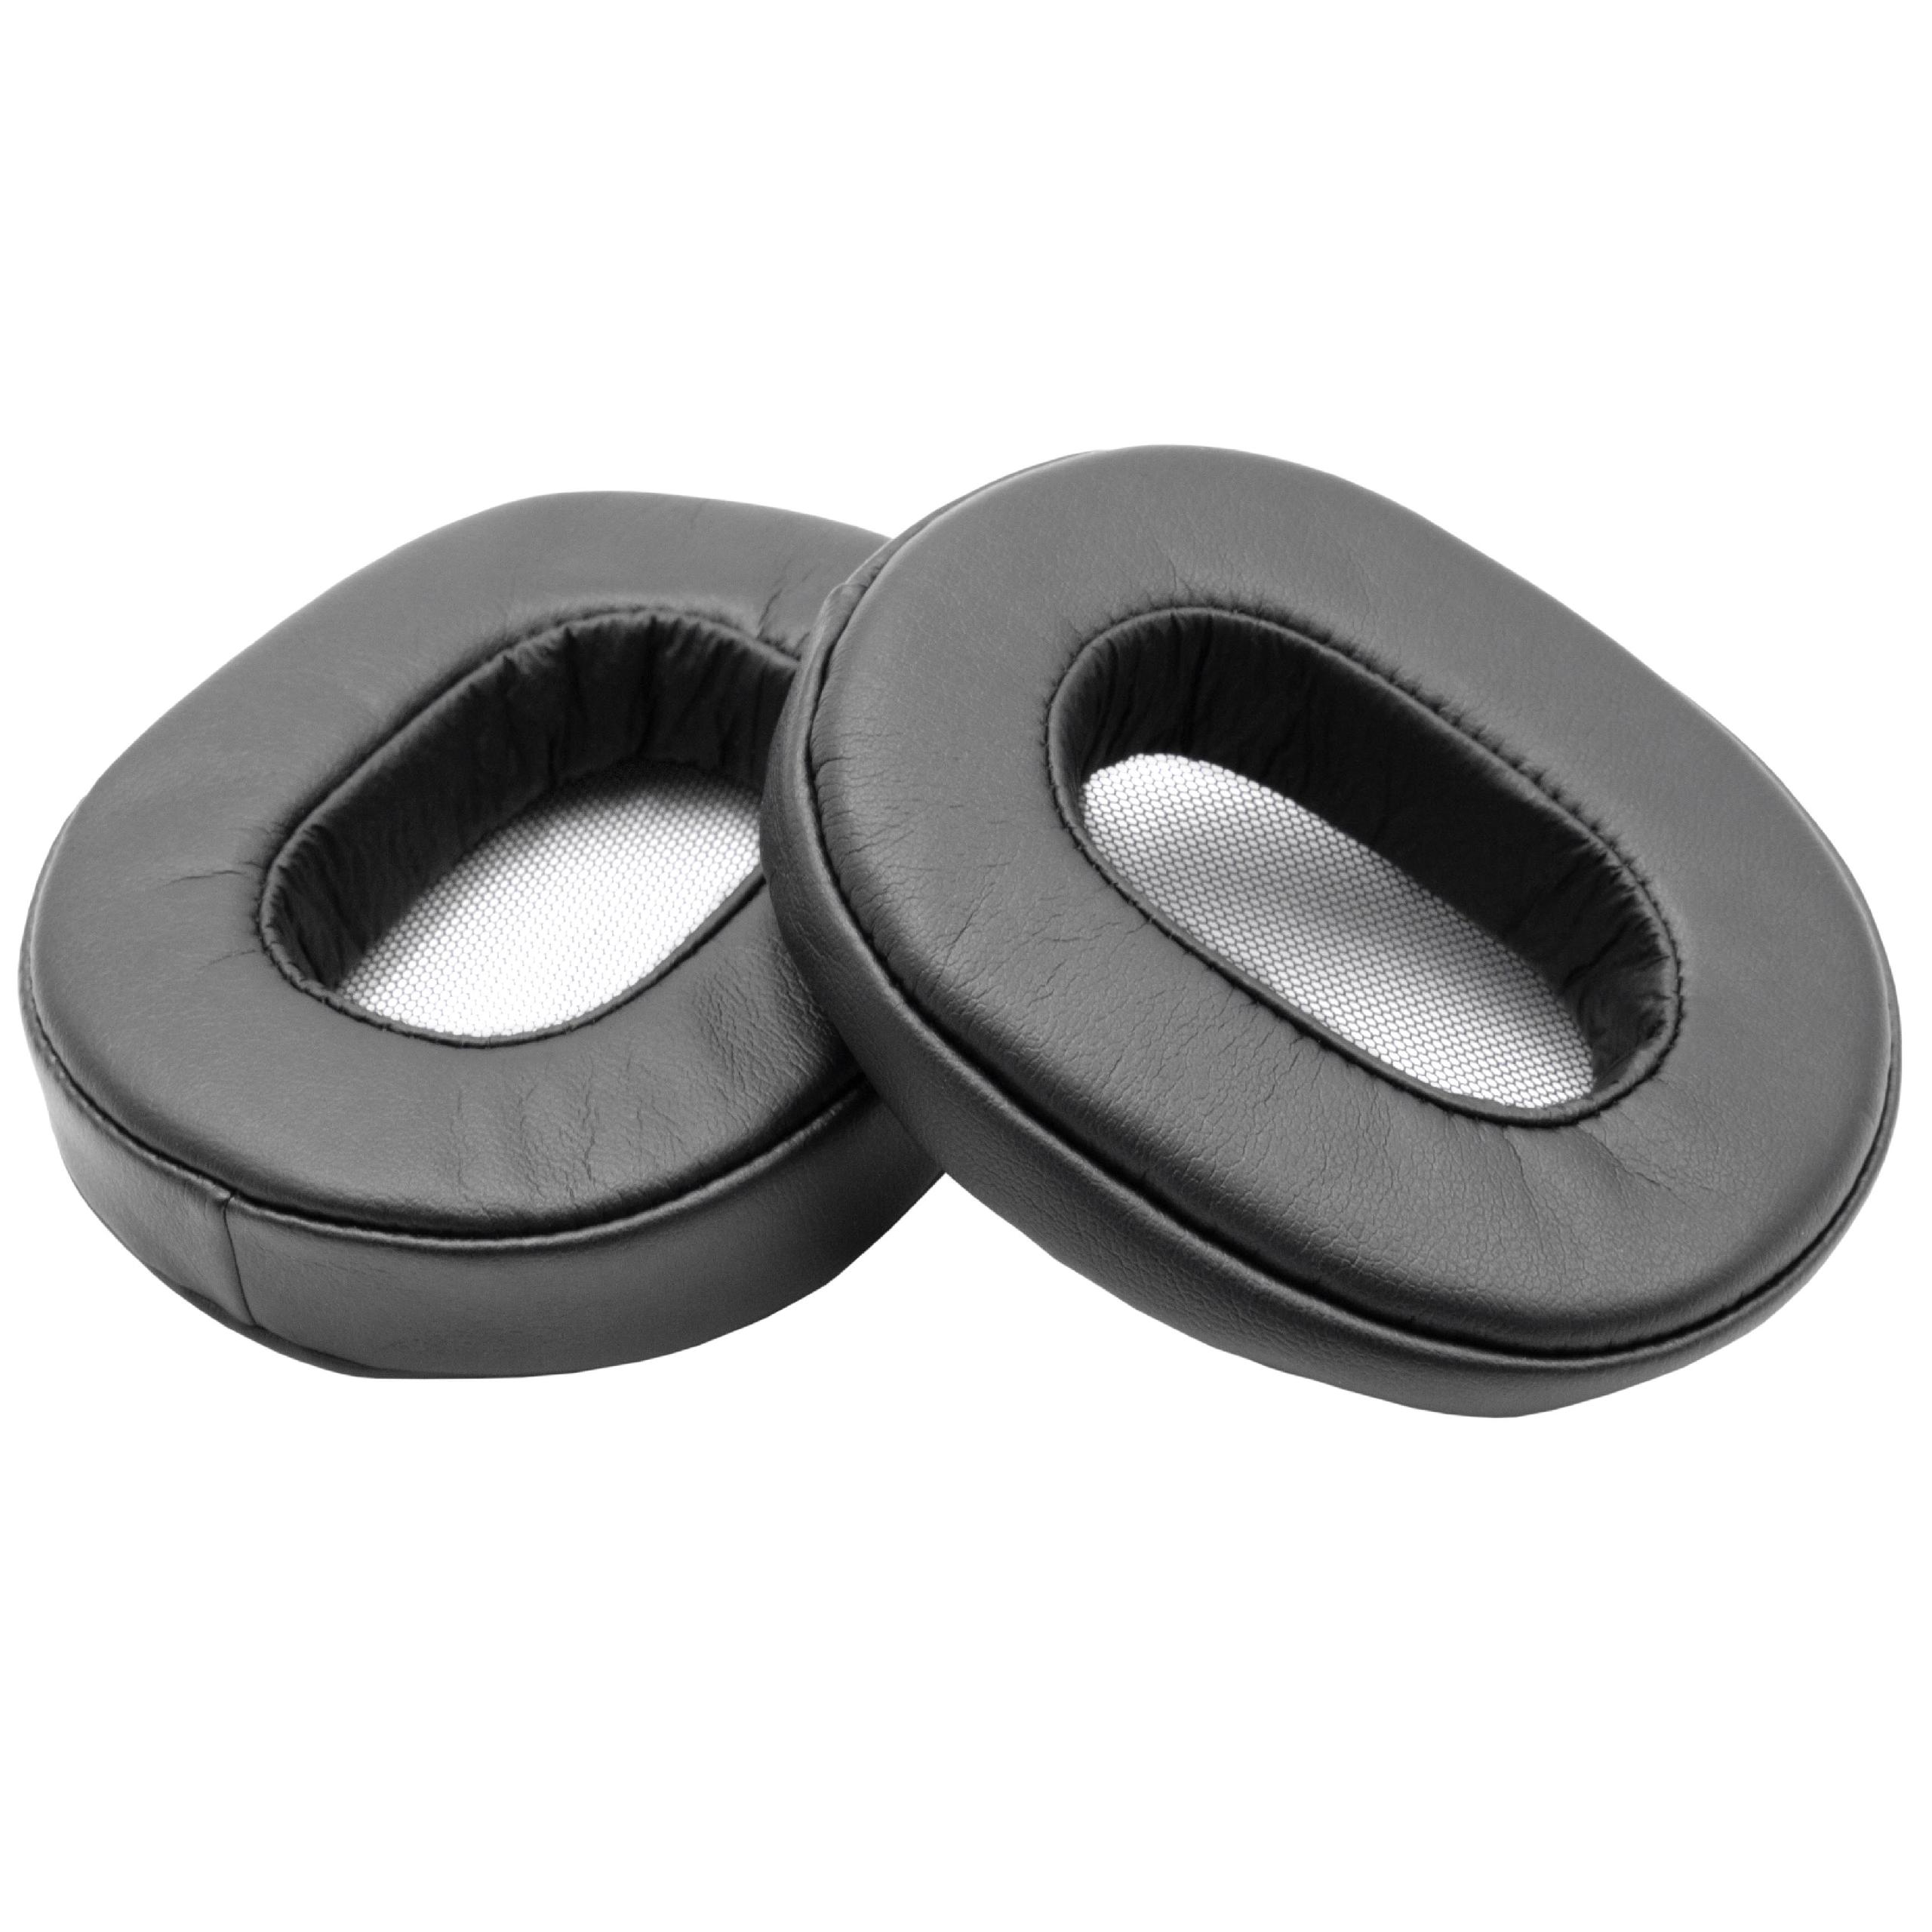 Ohrenpolster passend für Sony MDR-1A Kopfhörer u.a. - Polyurethan / Schaumstoff, 9,4 x 7,6 cm, 20 mm stark, Sc